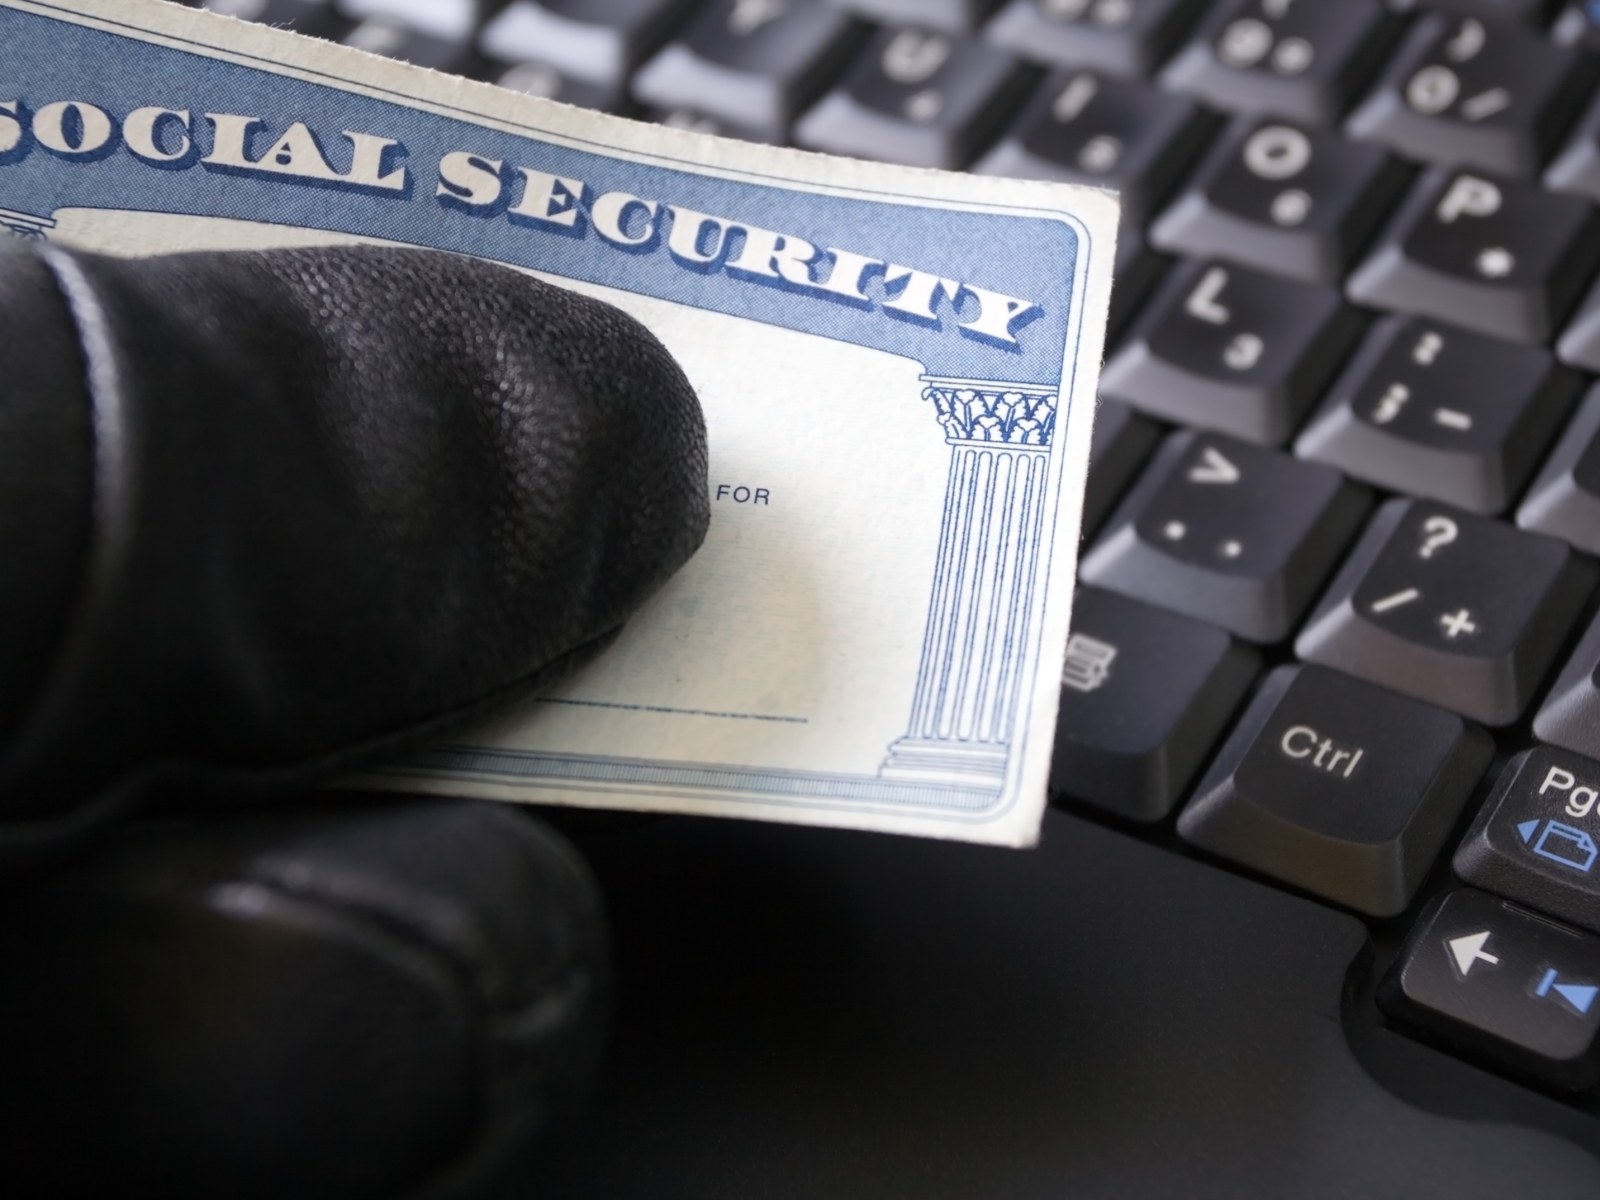 Προειδοποίηση κοινωνικής ασφάλισης: Εκατομμύρια Αμερικανοί καλούνται να προσέξουν τις κλήσεις απάτης